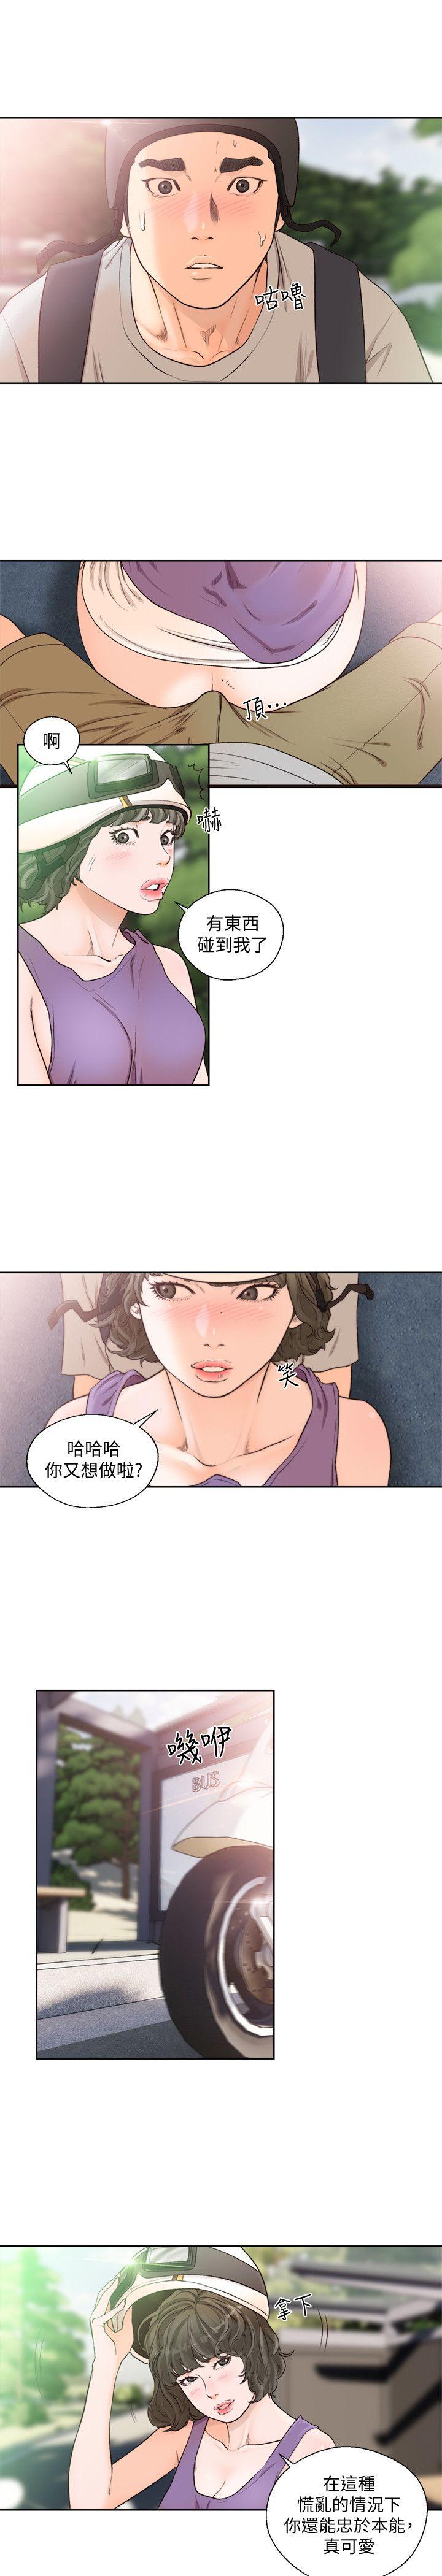 韩国污漫画 解禁:初始的快感 第94话-有机可乘的逃亡路 20